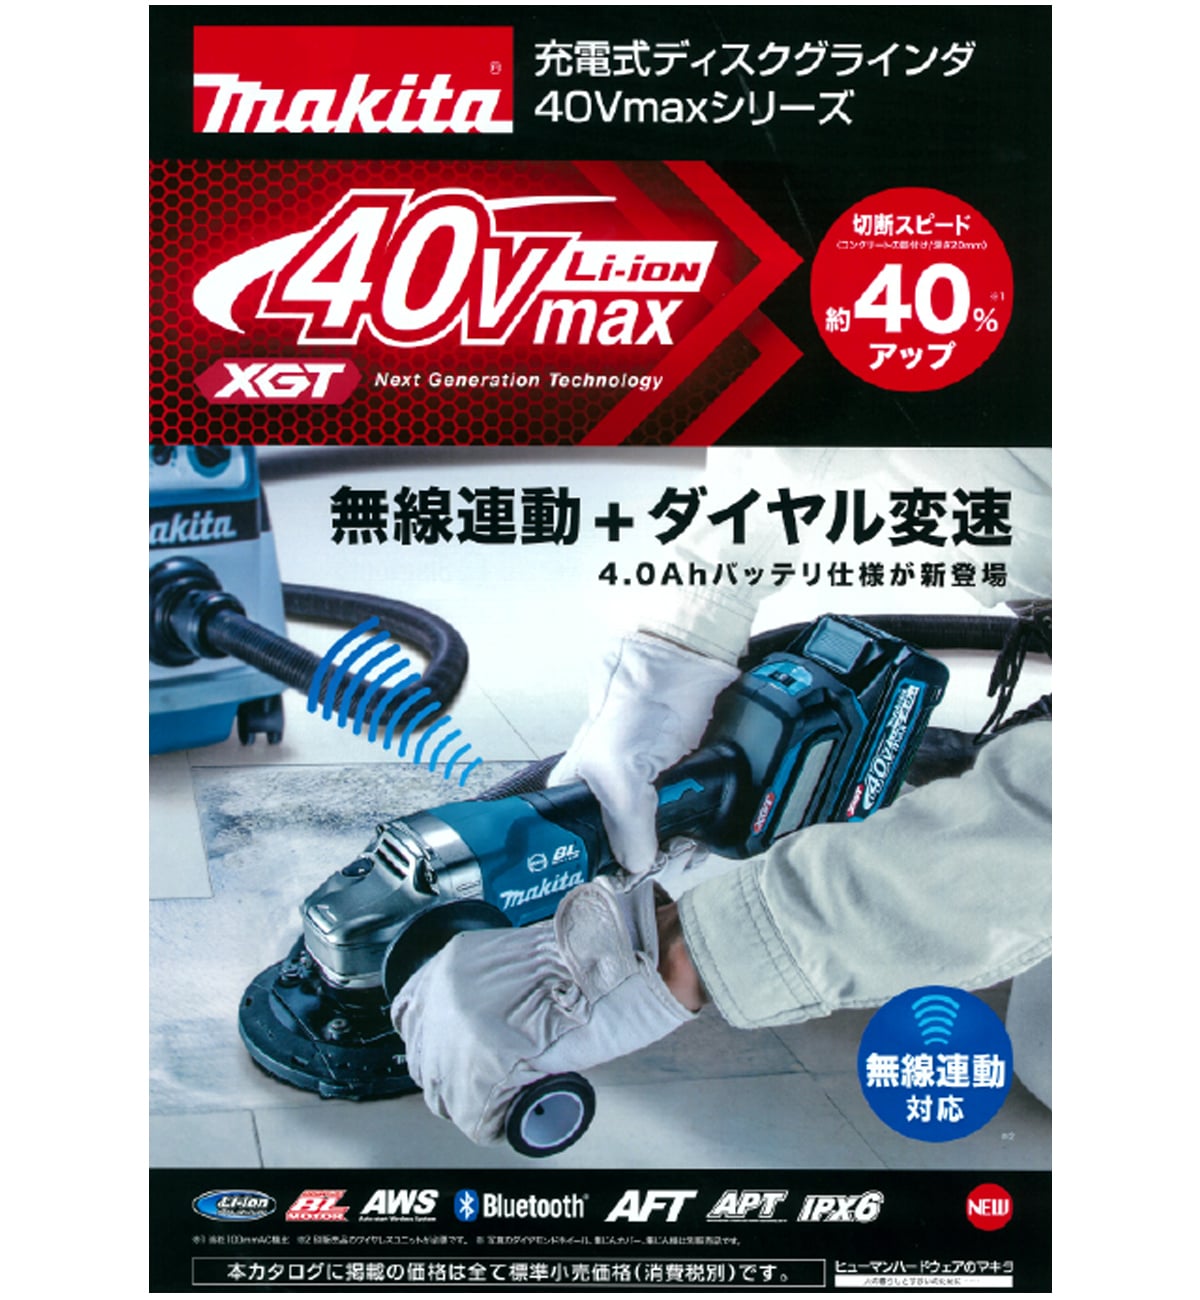 マキタ GA017GRMX 40Vmax充電式ディスクグラインダ100mm ウエダ金物 ...